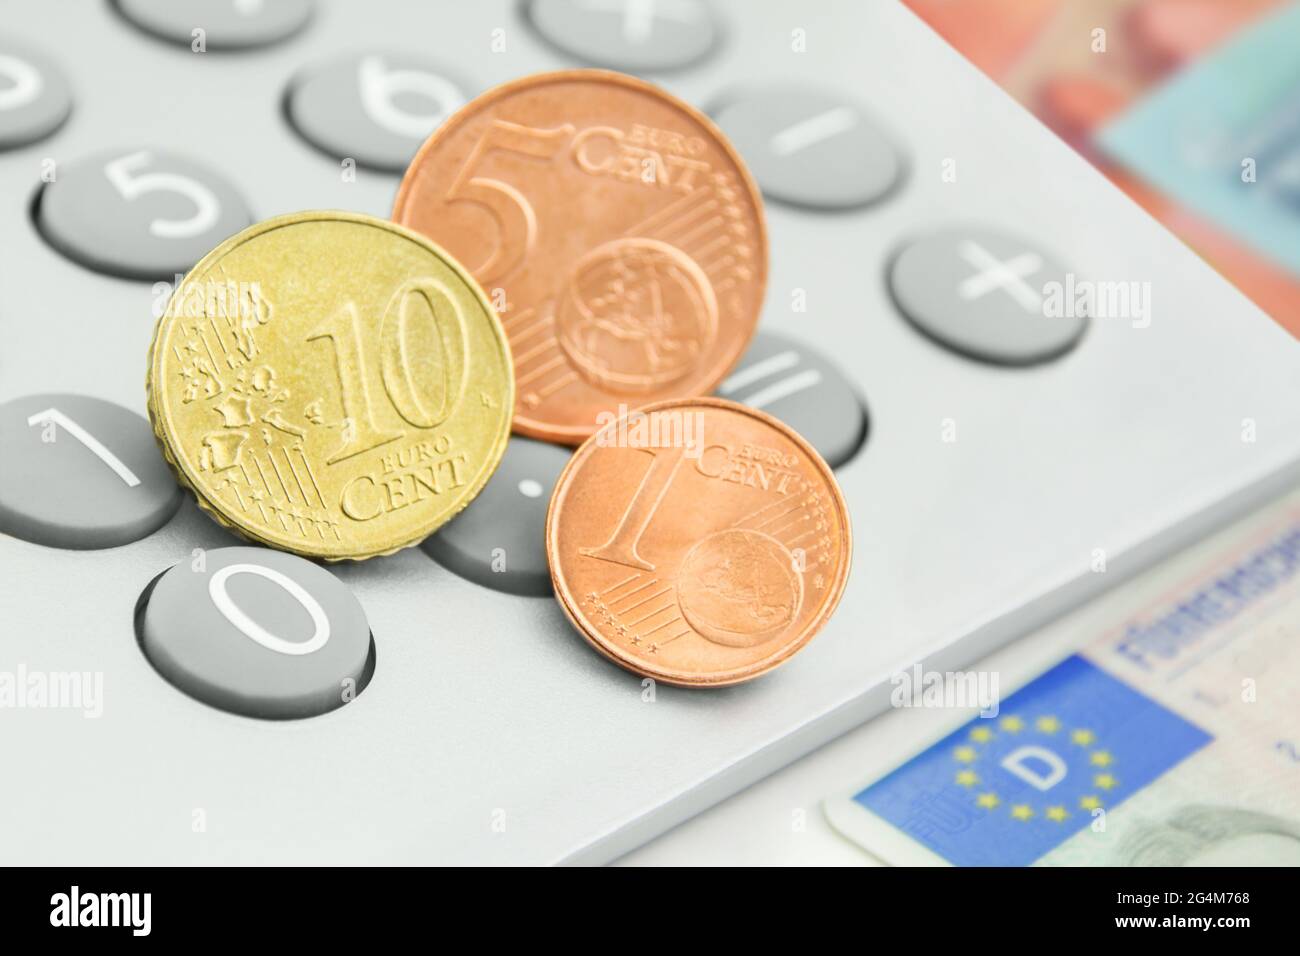 Rechner und 16 Cent Euro mit deutschem Führerschein Stockfotografie - Alamy